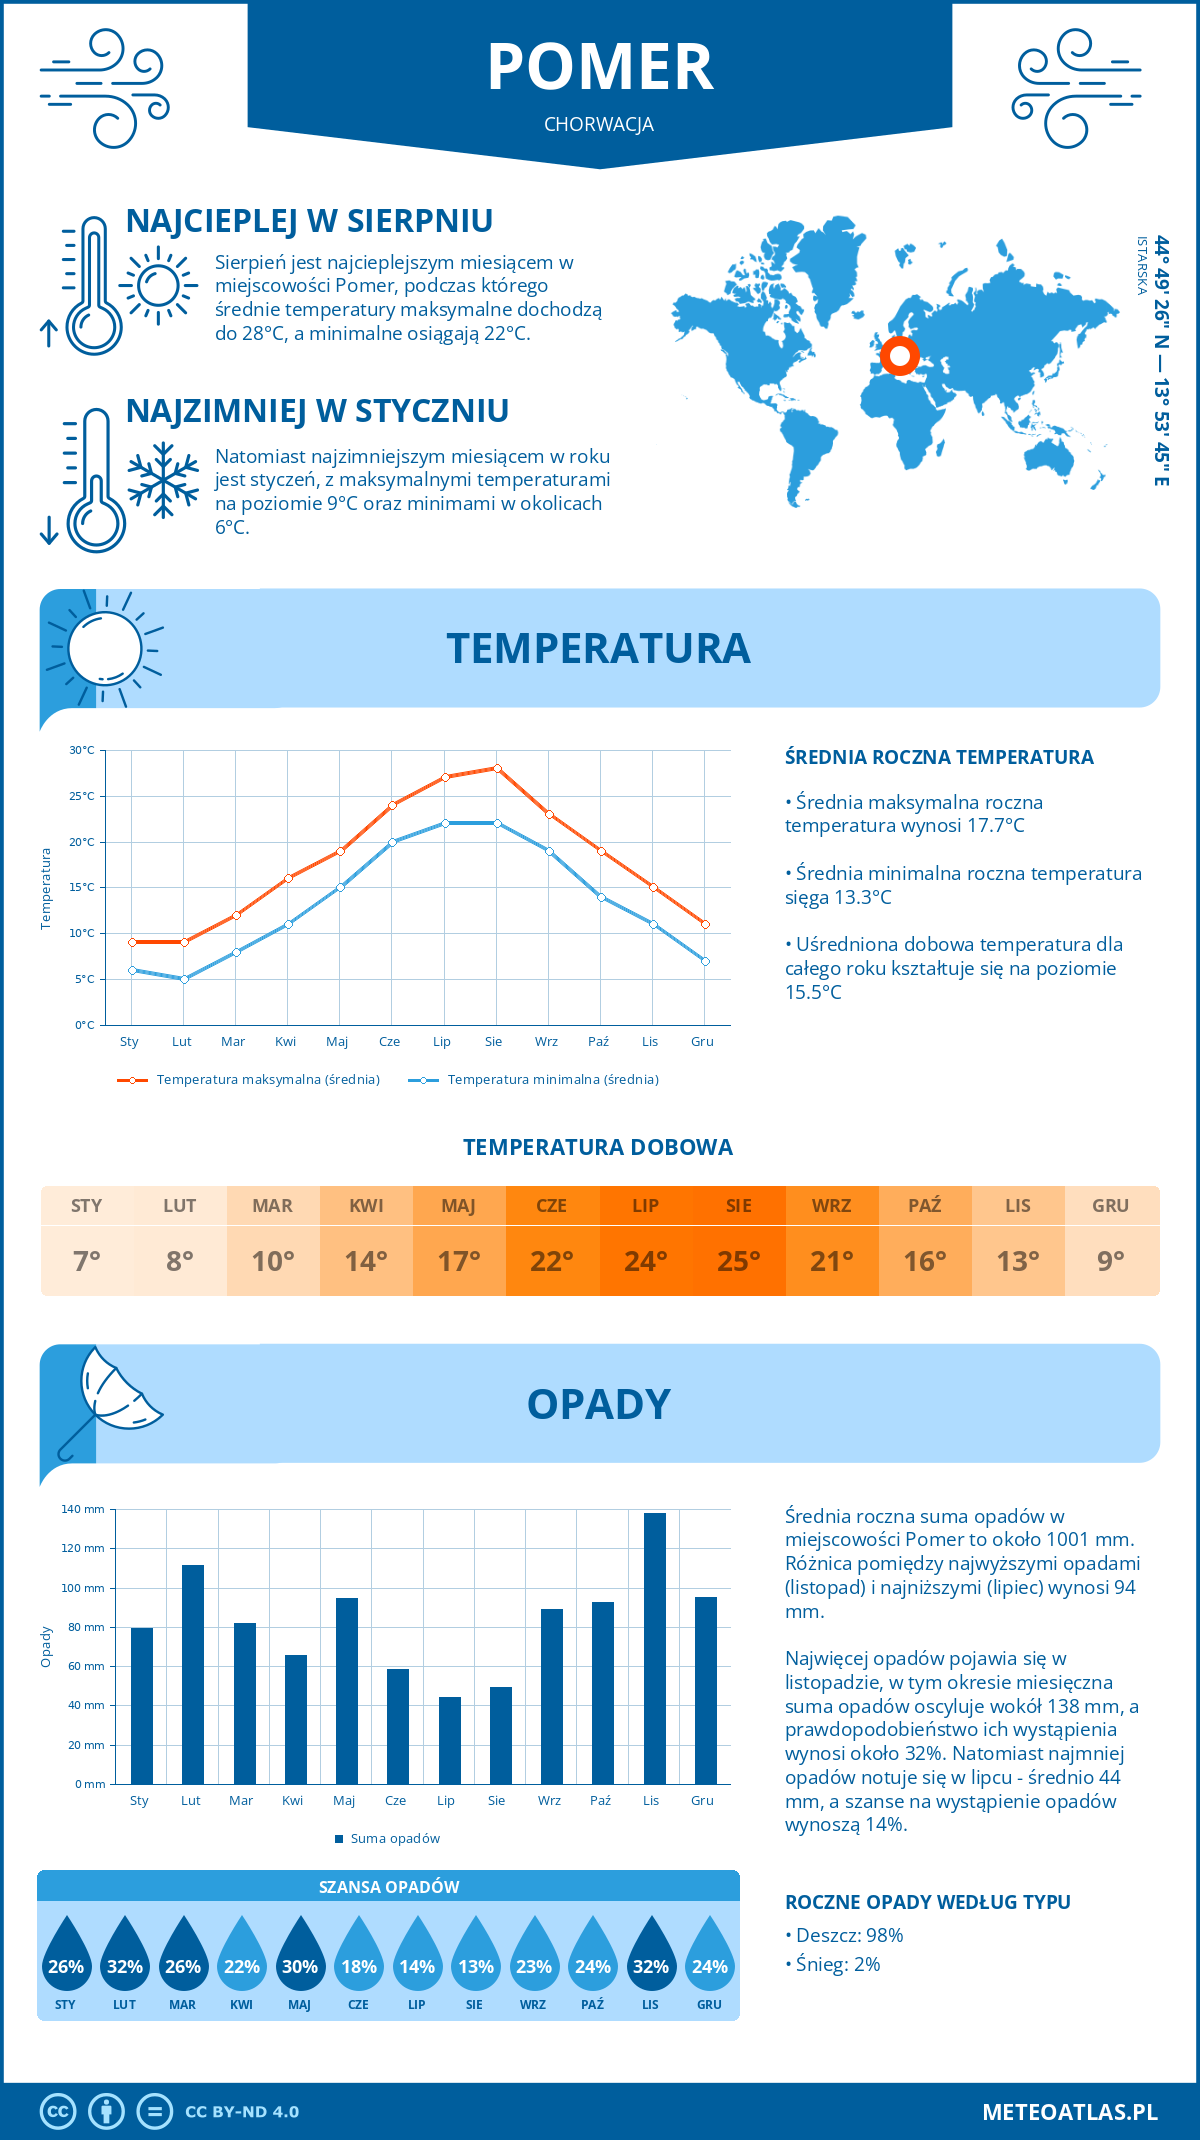 Pogoda Pomer (Chorwacja). Temperatura oraz opady.